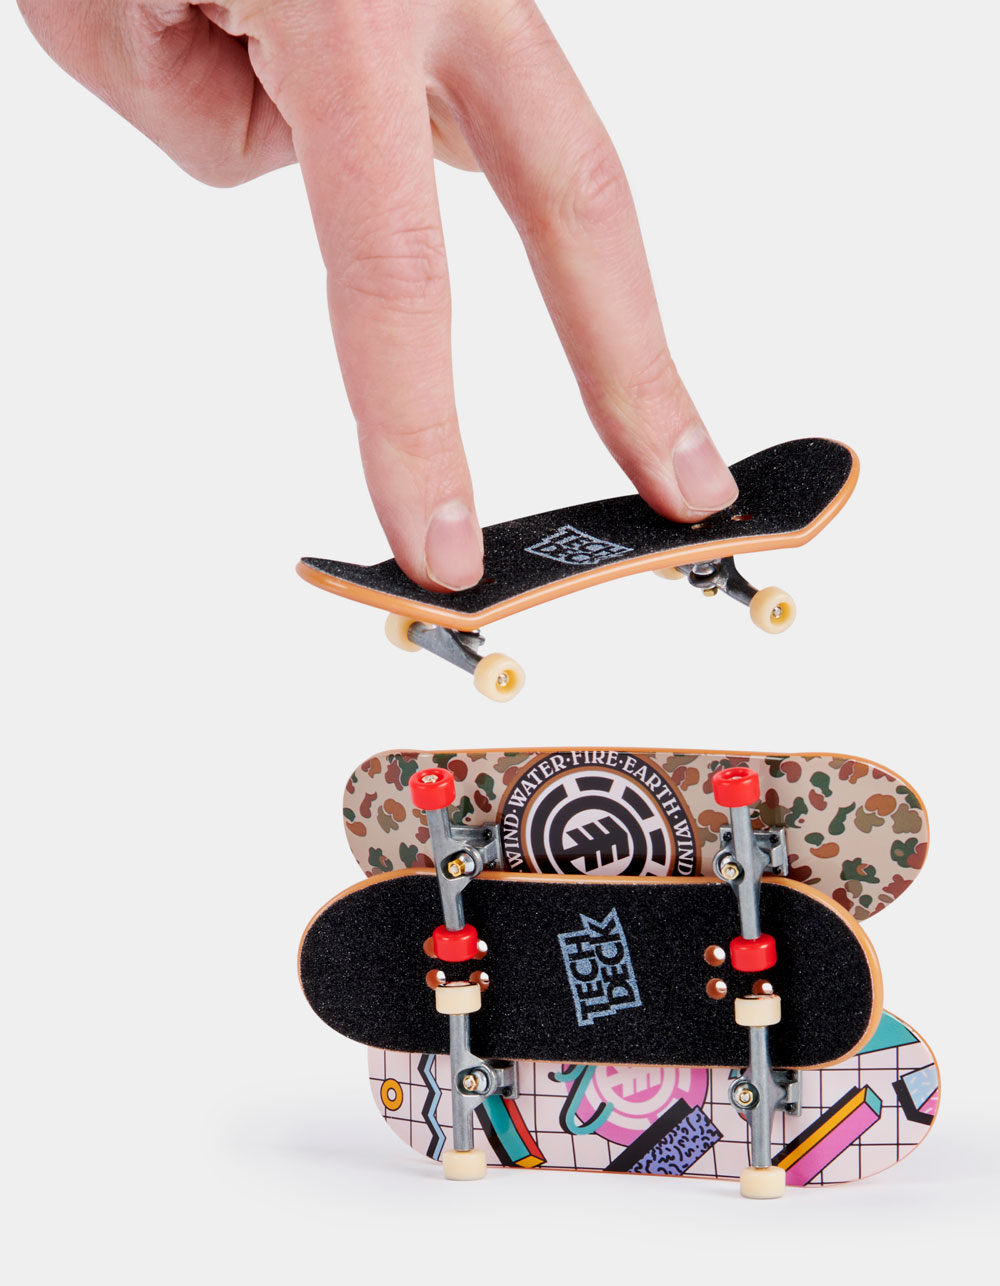 Tech Deck 4-Pack Ultra DLX Fingerboard Skateboard Assortment - 6028815